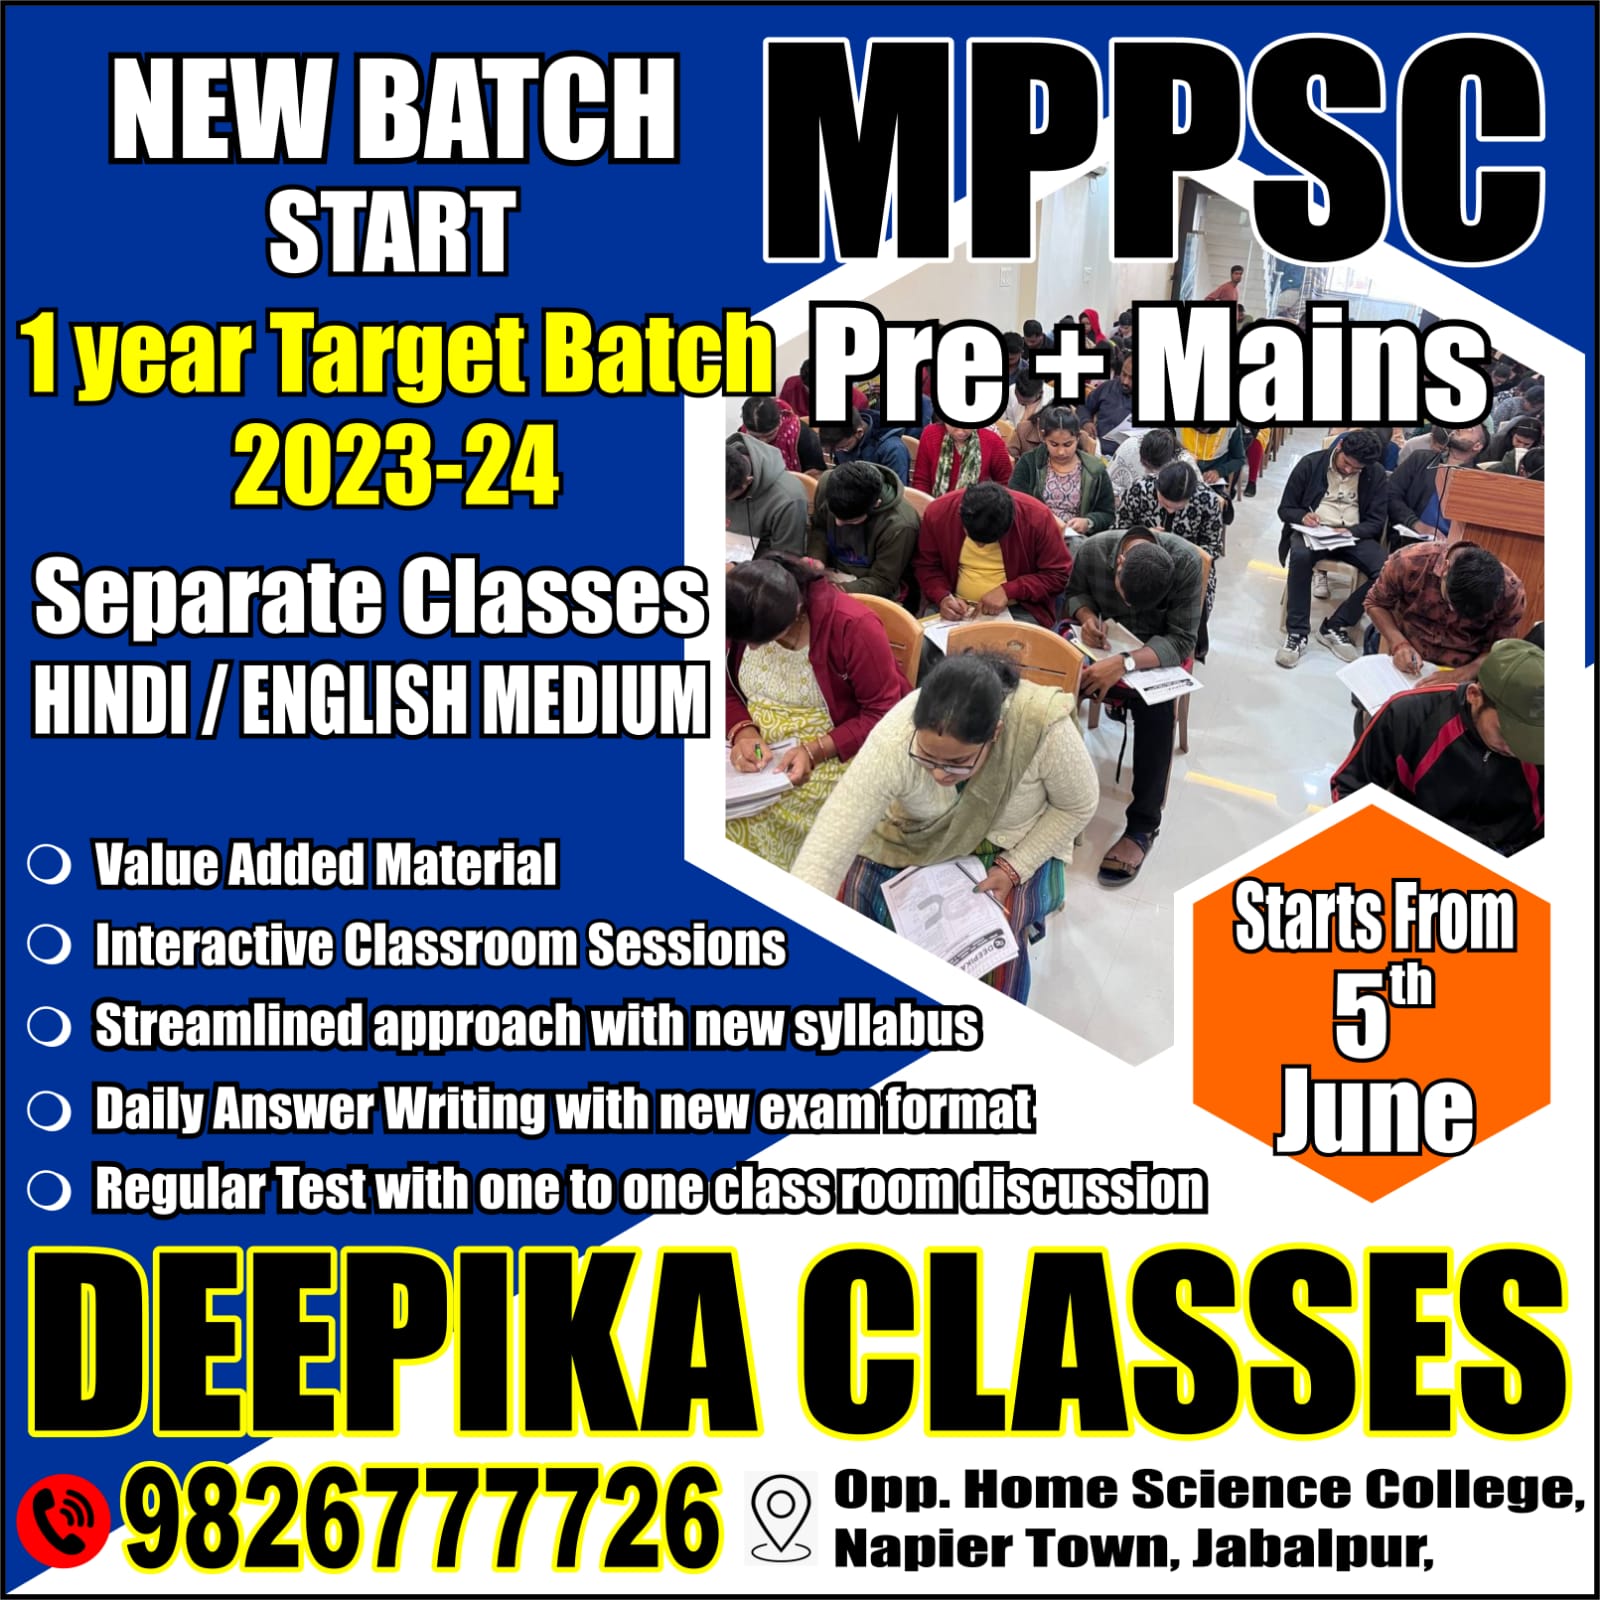 Deepika Classes, Mppsc Classes in Jabalpur, best Mppsc Classes in Jabalpur, Mppsc Coaching in Jabalpur, mppsc coaching institute in Jabalpur, mppsc preparation in jabalpur